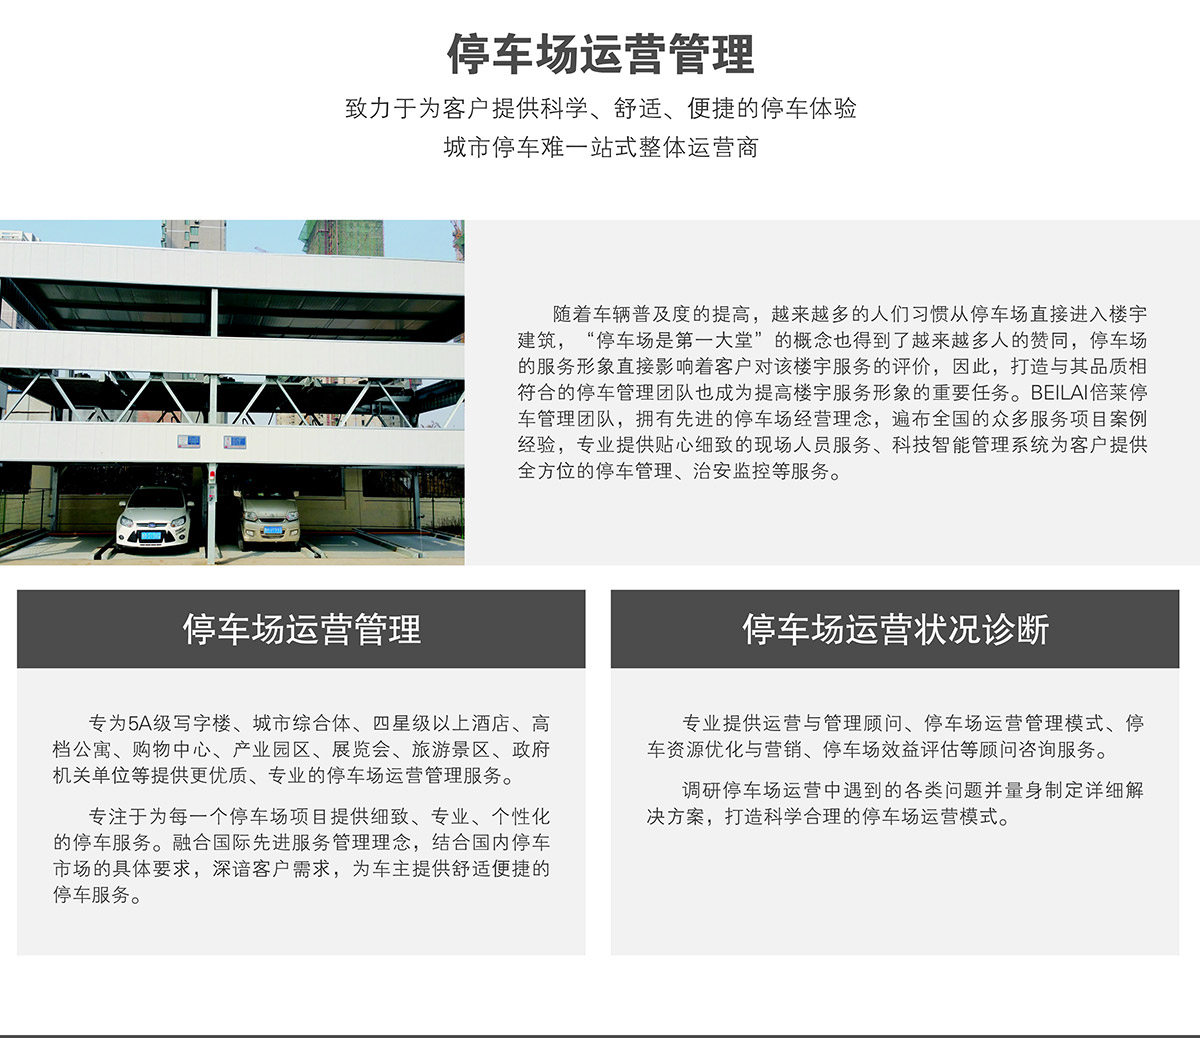 四川停车场运营管理为客户提供科学舒适便捷的停车体验.jpg